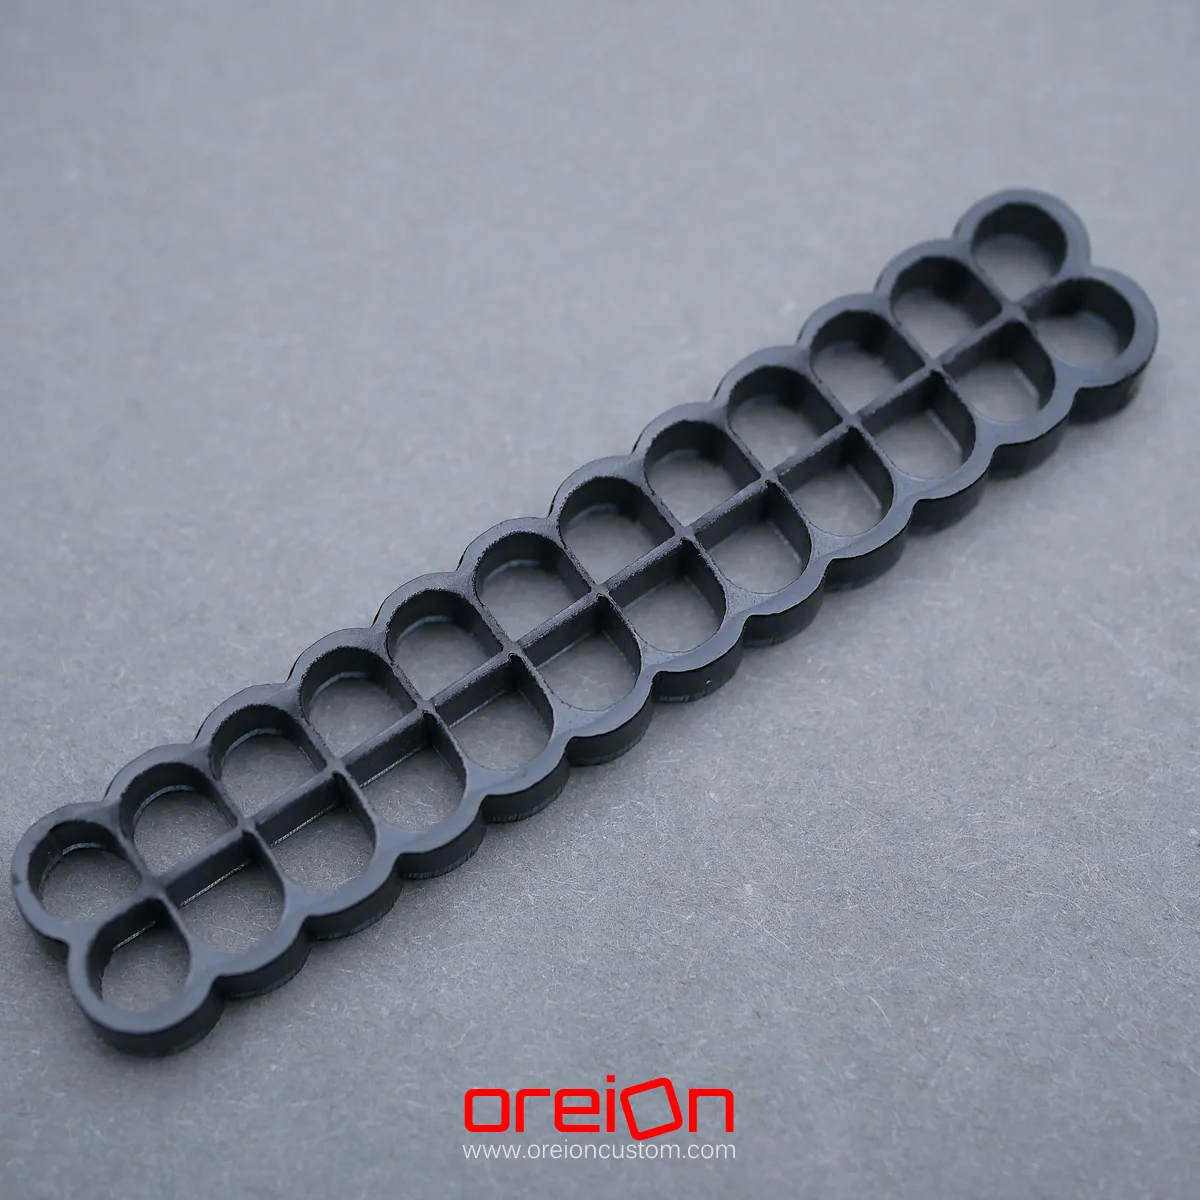 oreioncustom Cable Comb – black Closed 24 pin